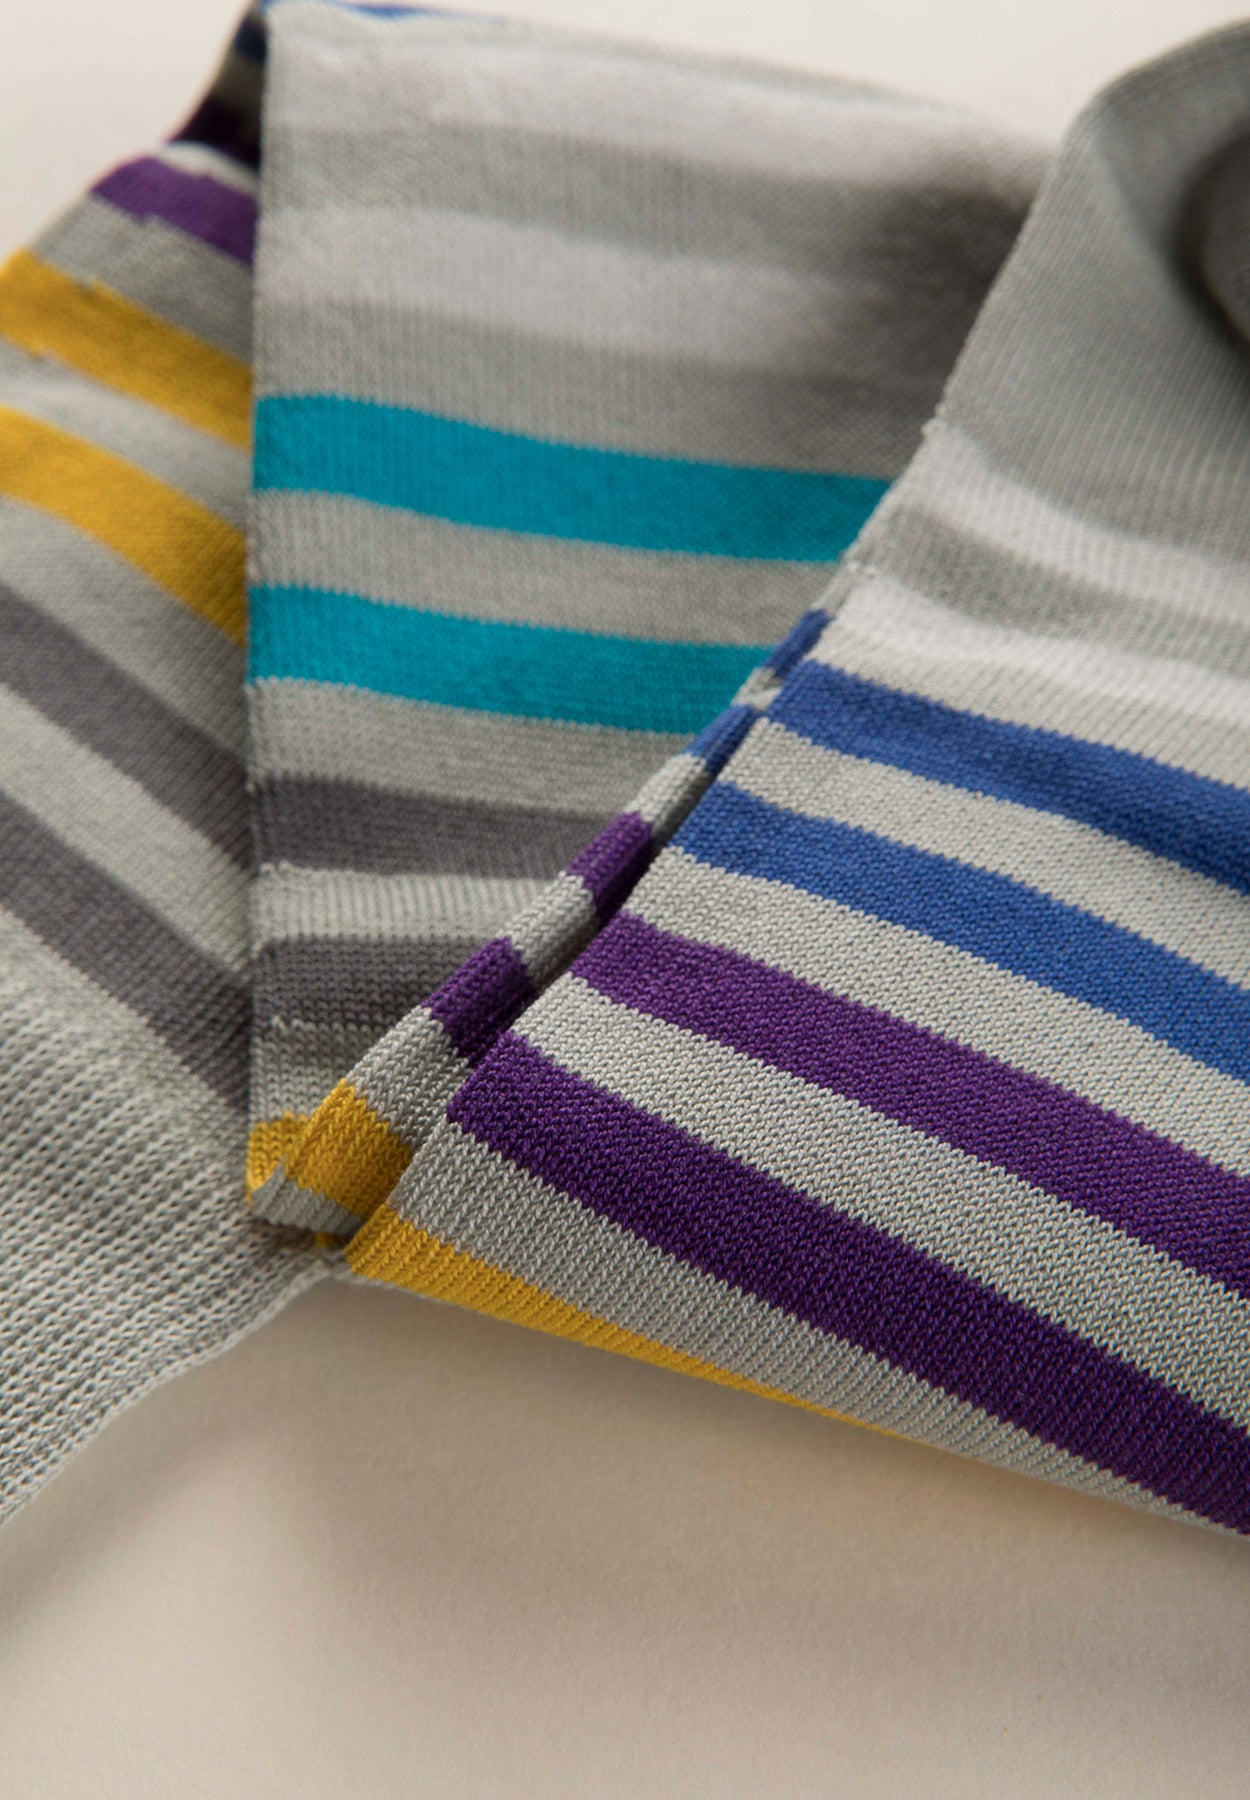 Multicolour striped grey stretch cotton socks